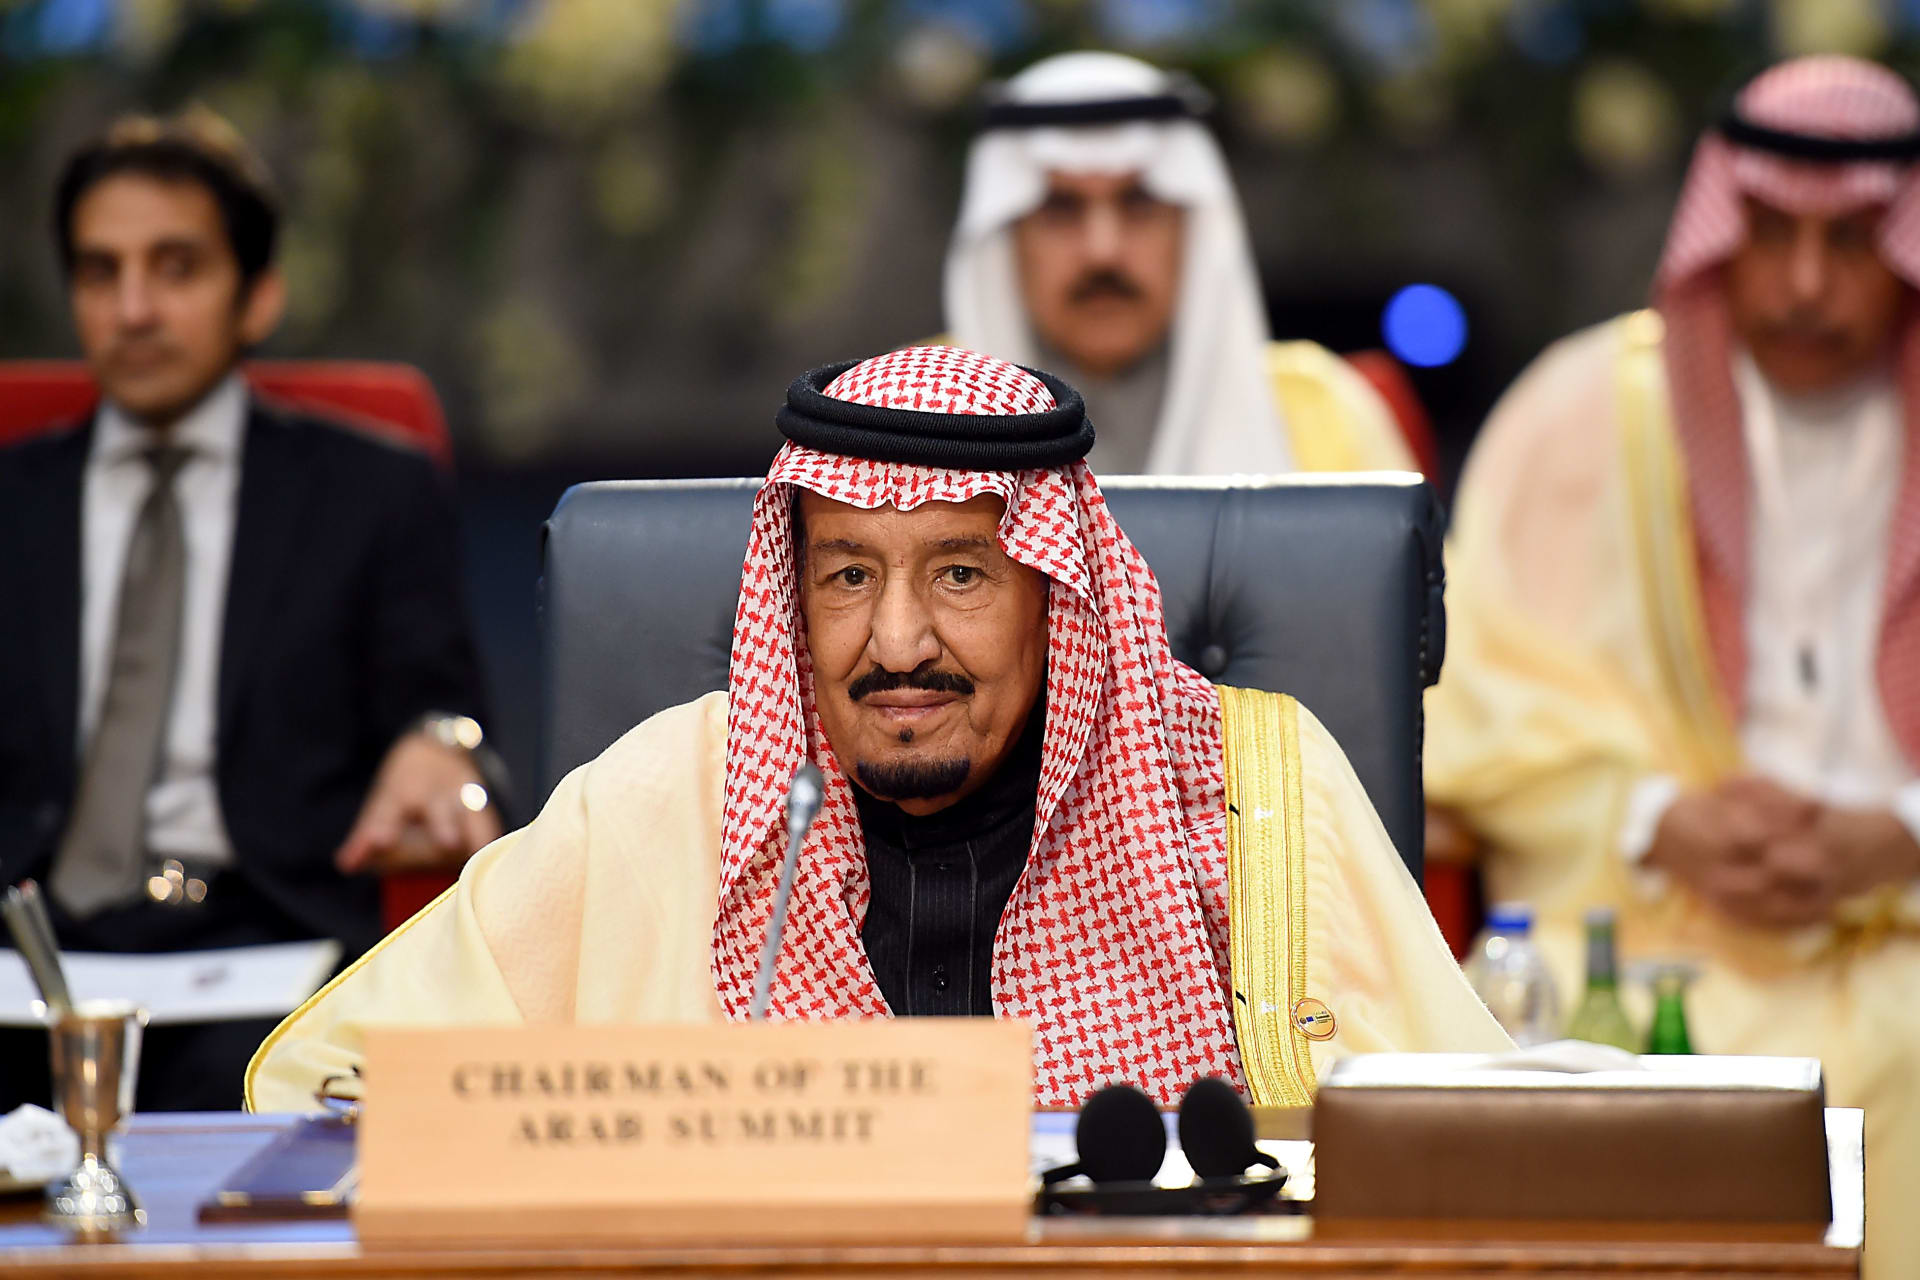 السعودية: الملك سلمان يُعين رئيسا جديدا للديوان الملكي ويأمر بإنشاء وزارة